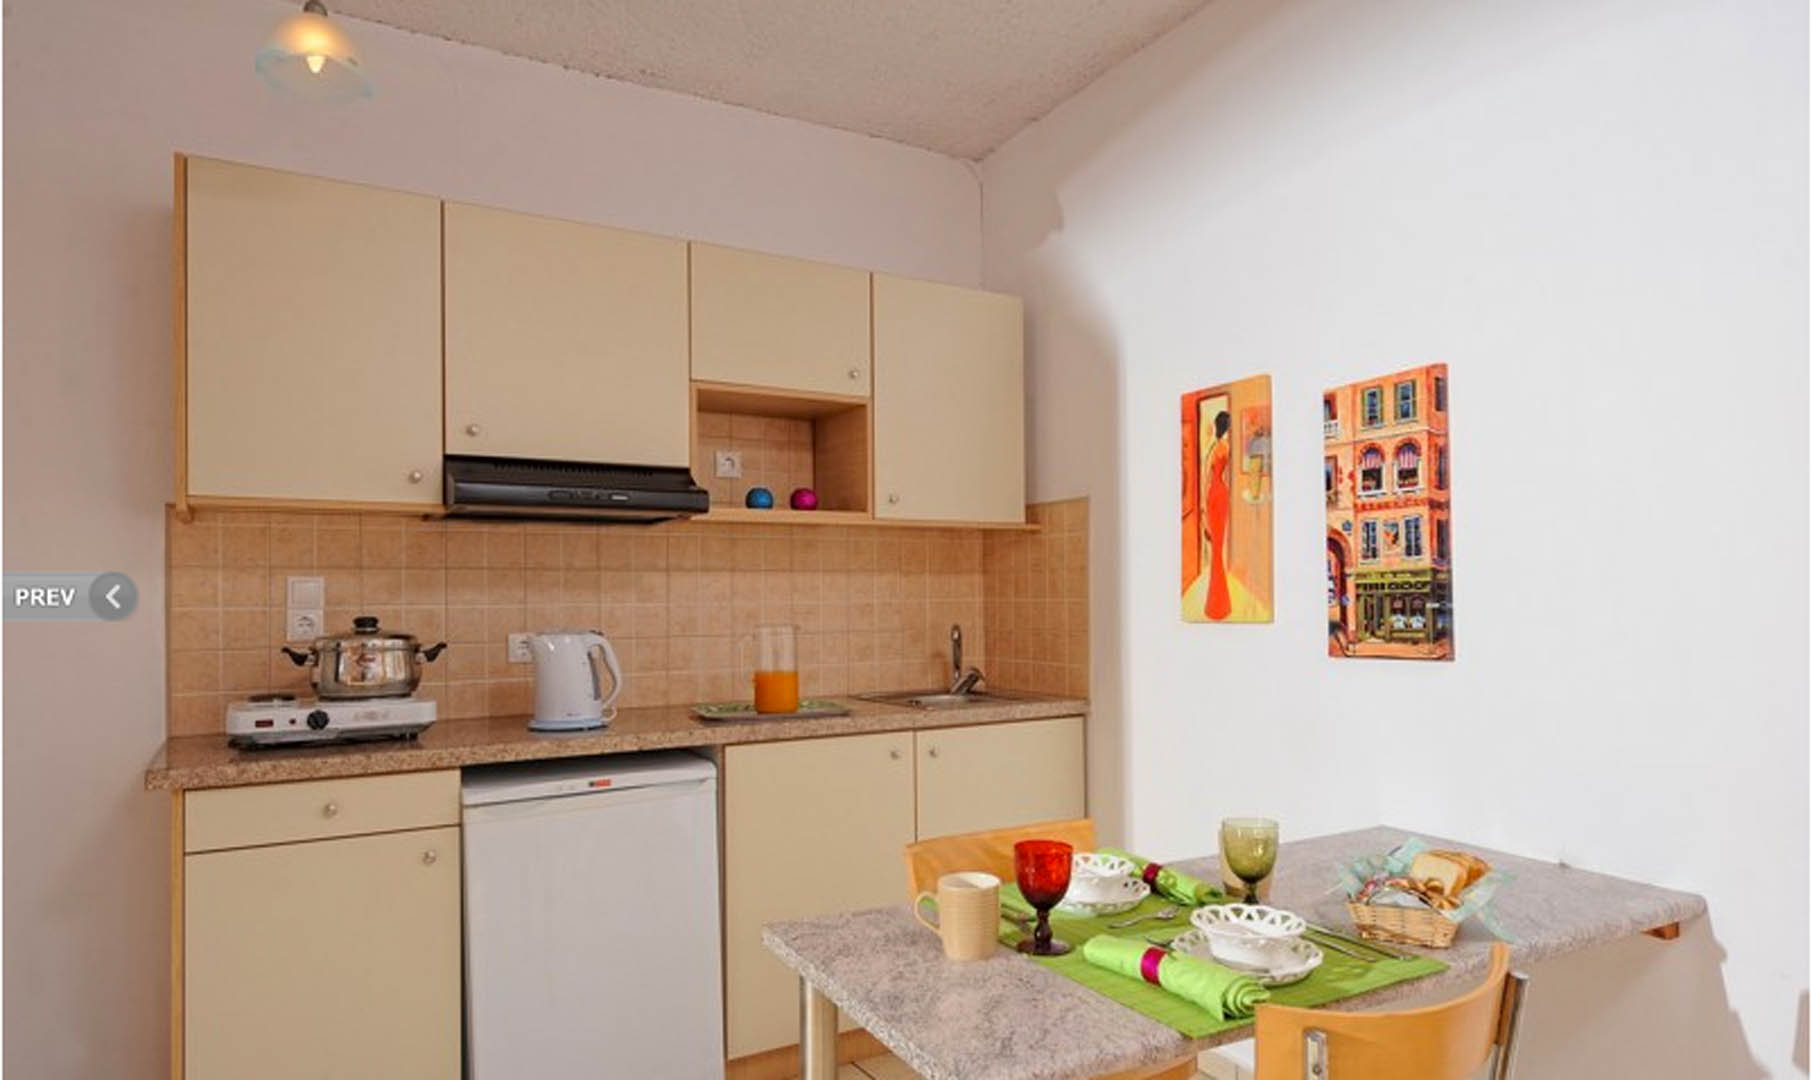 Standard Apartment Kitchen